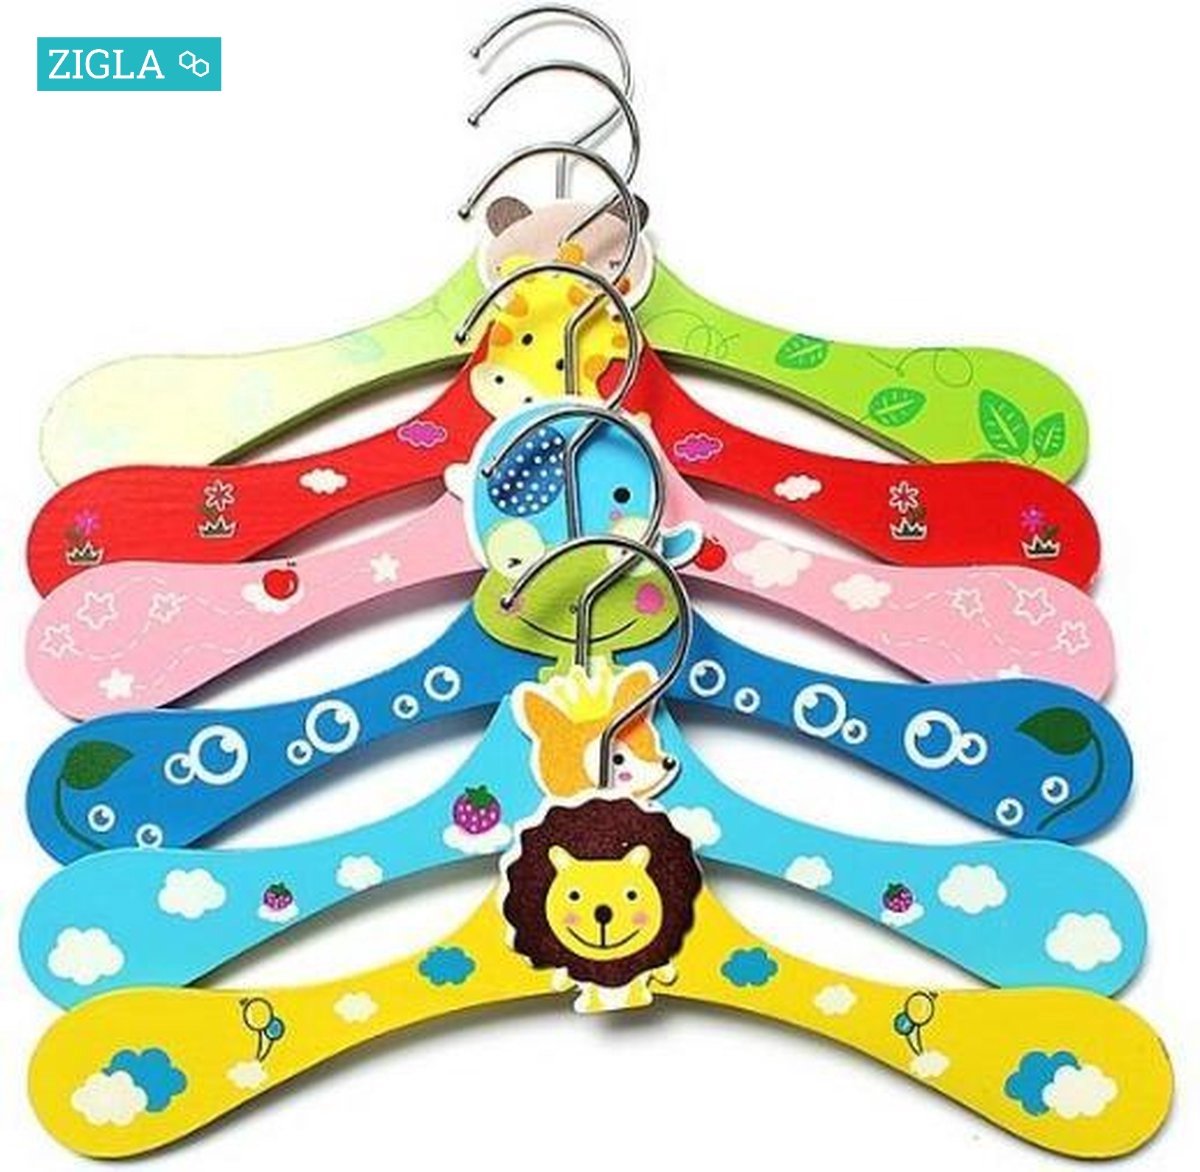 ZIGLA - Houten kledinghangers voor kinderen en baby's - Set van 12 stuks - Verschillende kleuren/dieren - 28xh15 cm